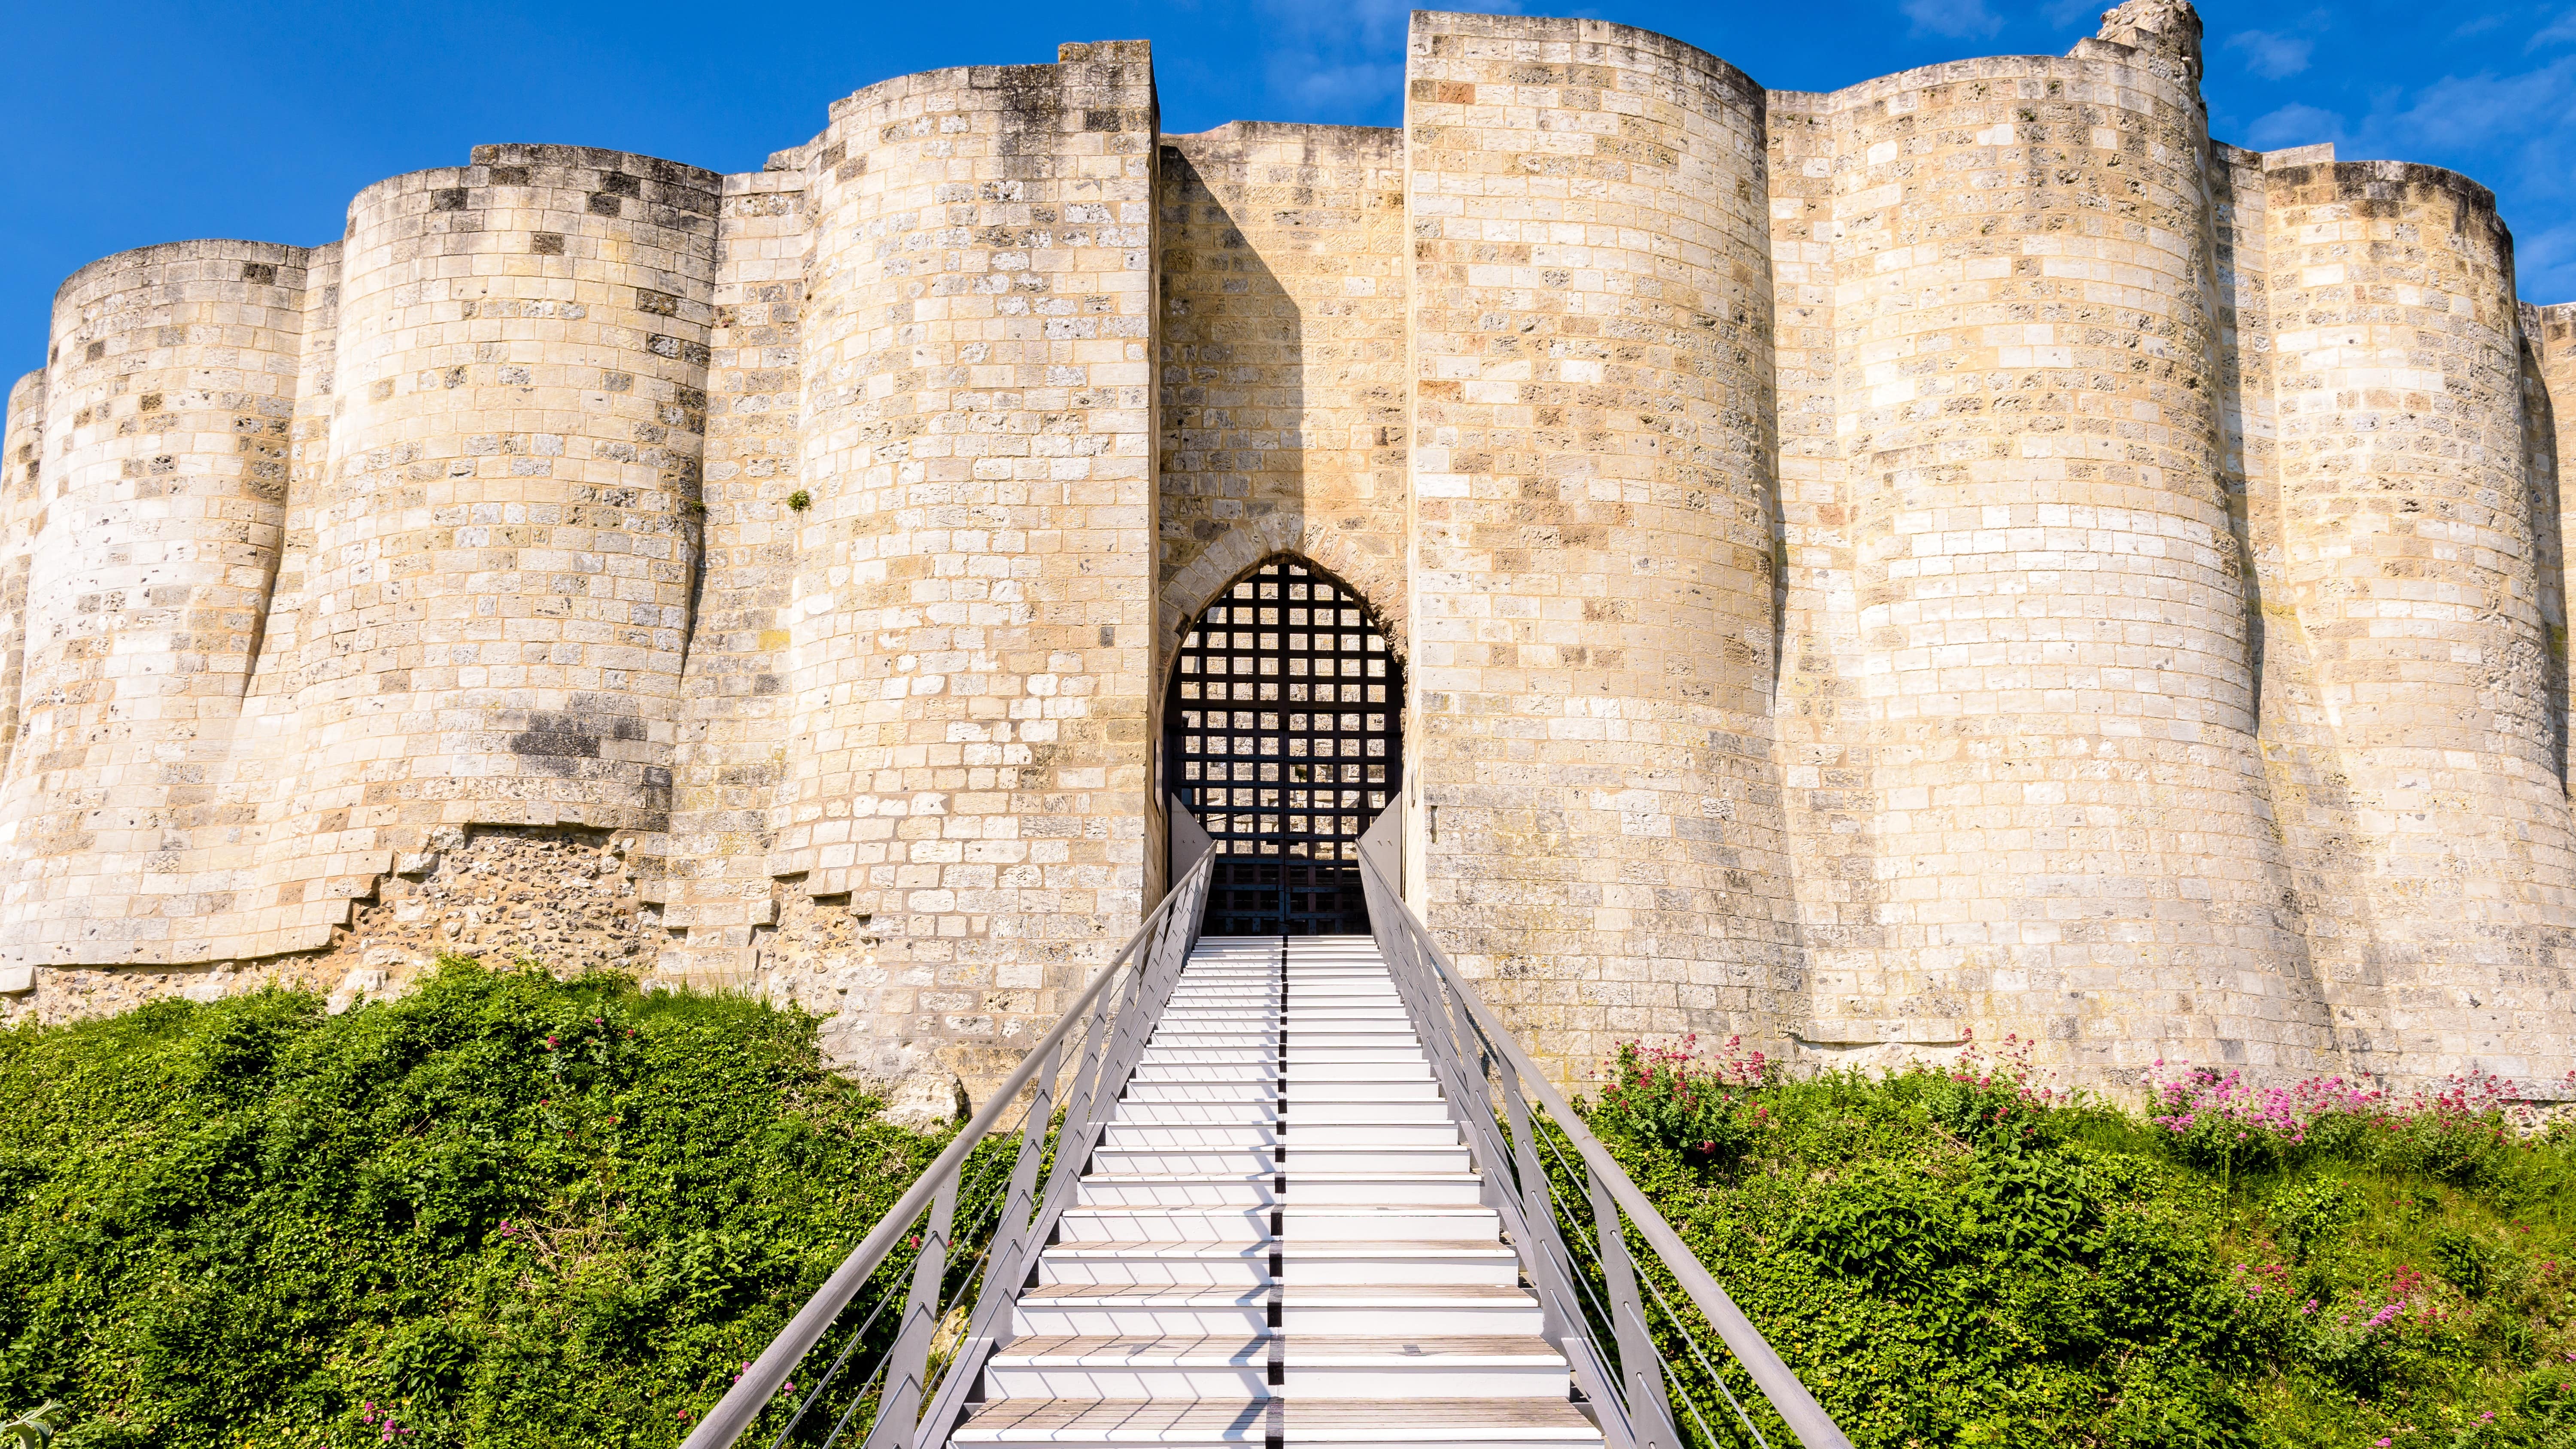 Vue depuis l’escalier qui mène à l’entrée de la cour intérieure du château Gaillard, un château médiéval fortifié